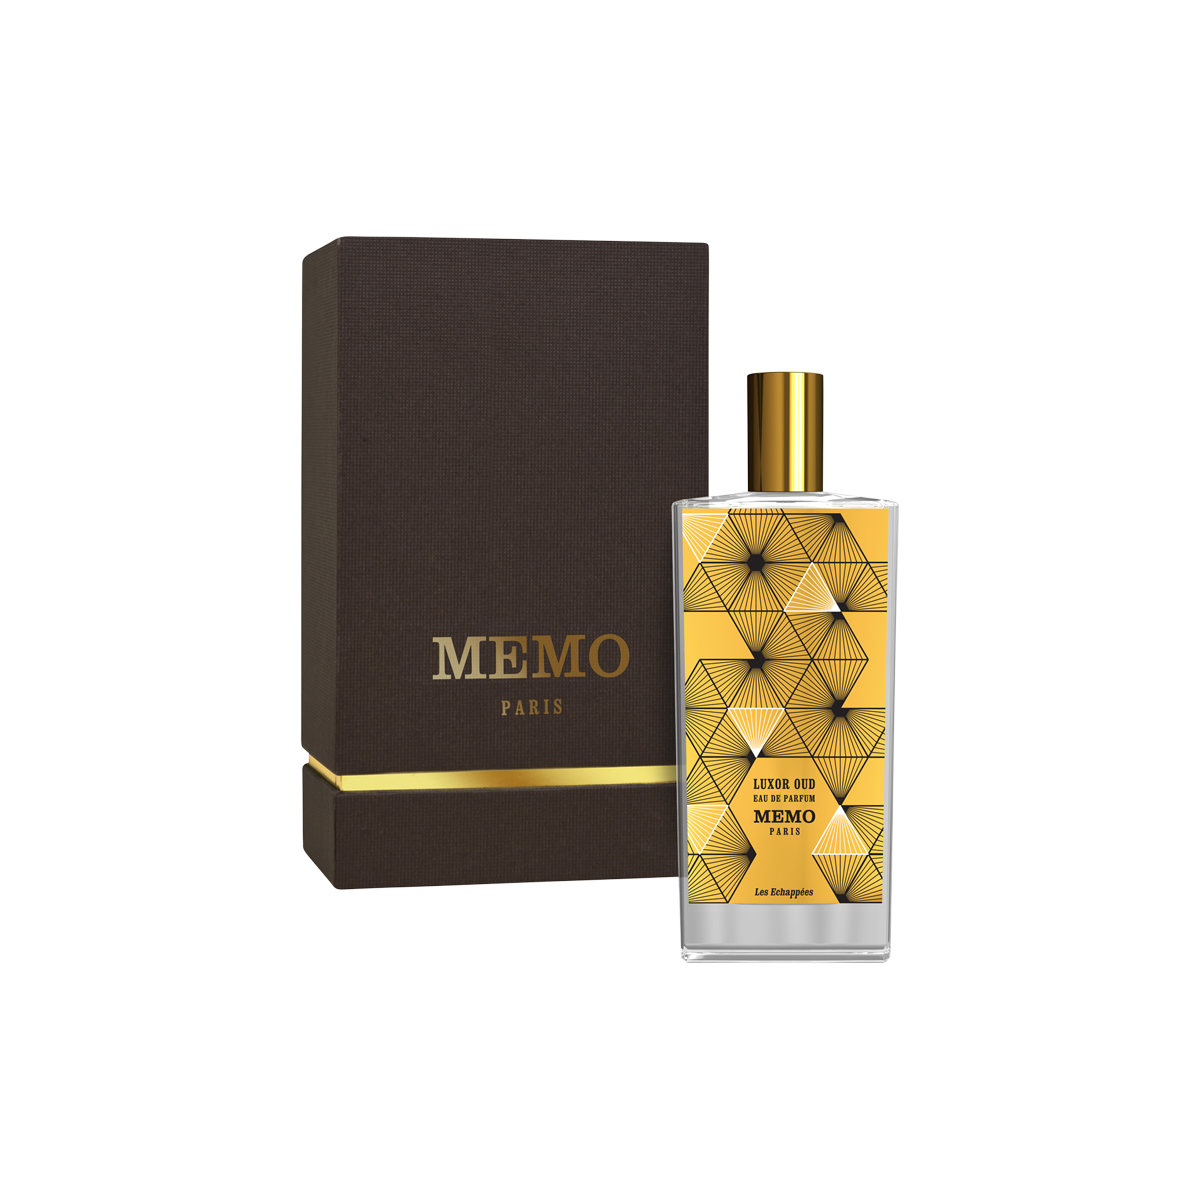 Memo Paris - Luxor Oud Eau de Parfum